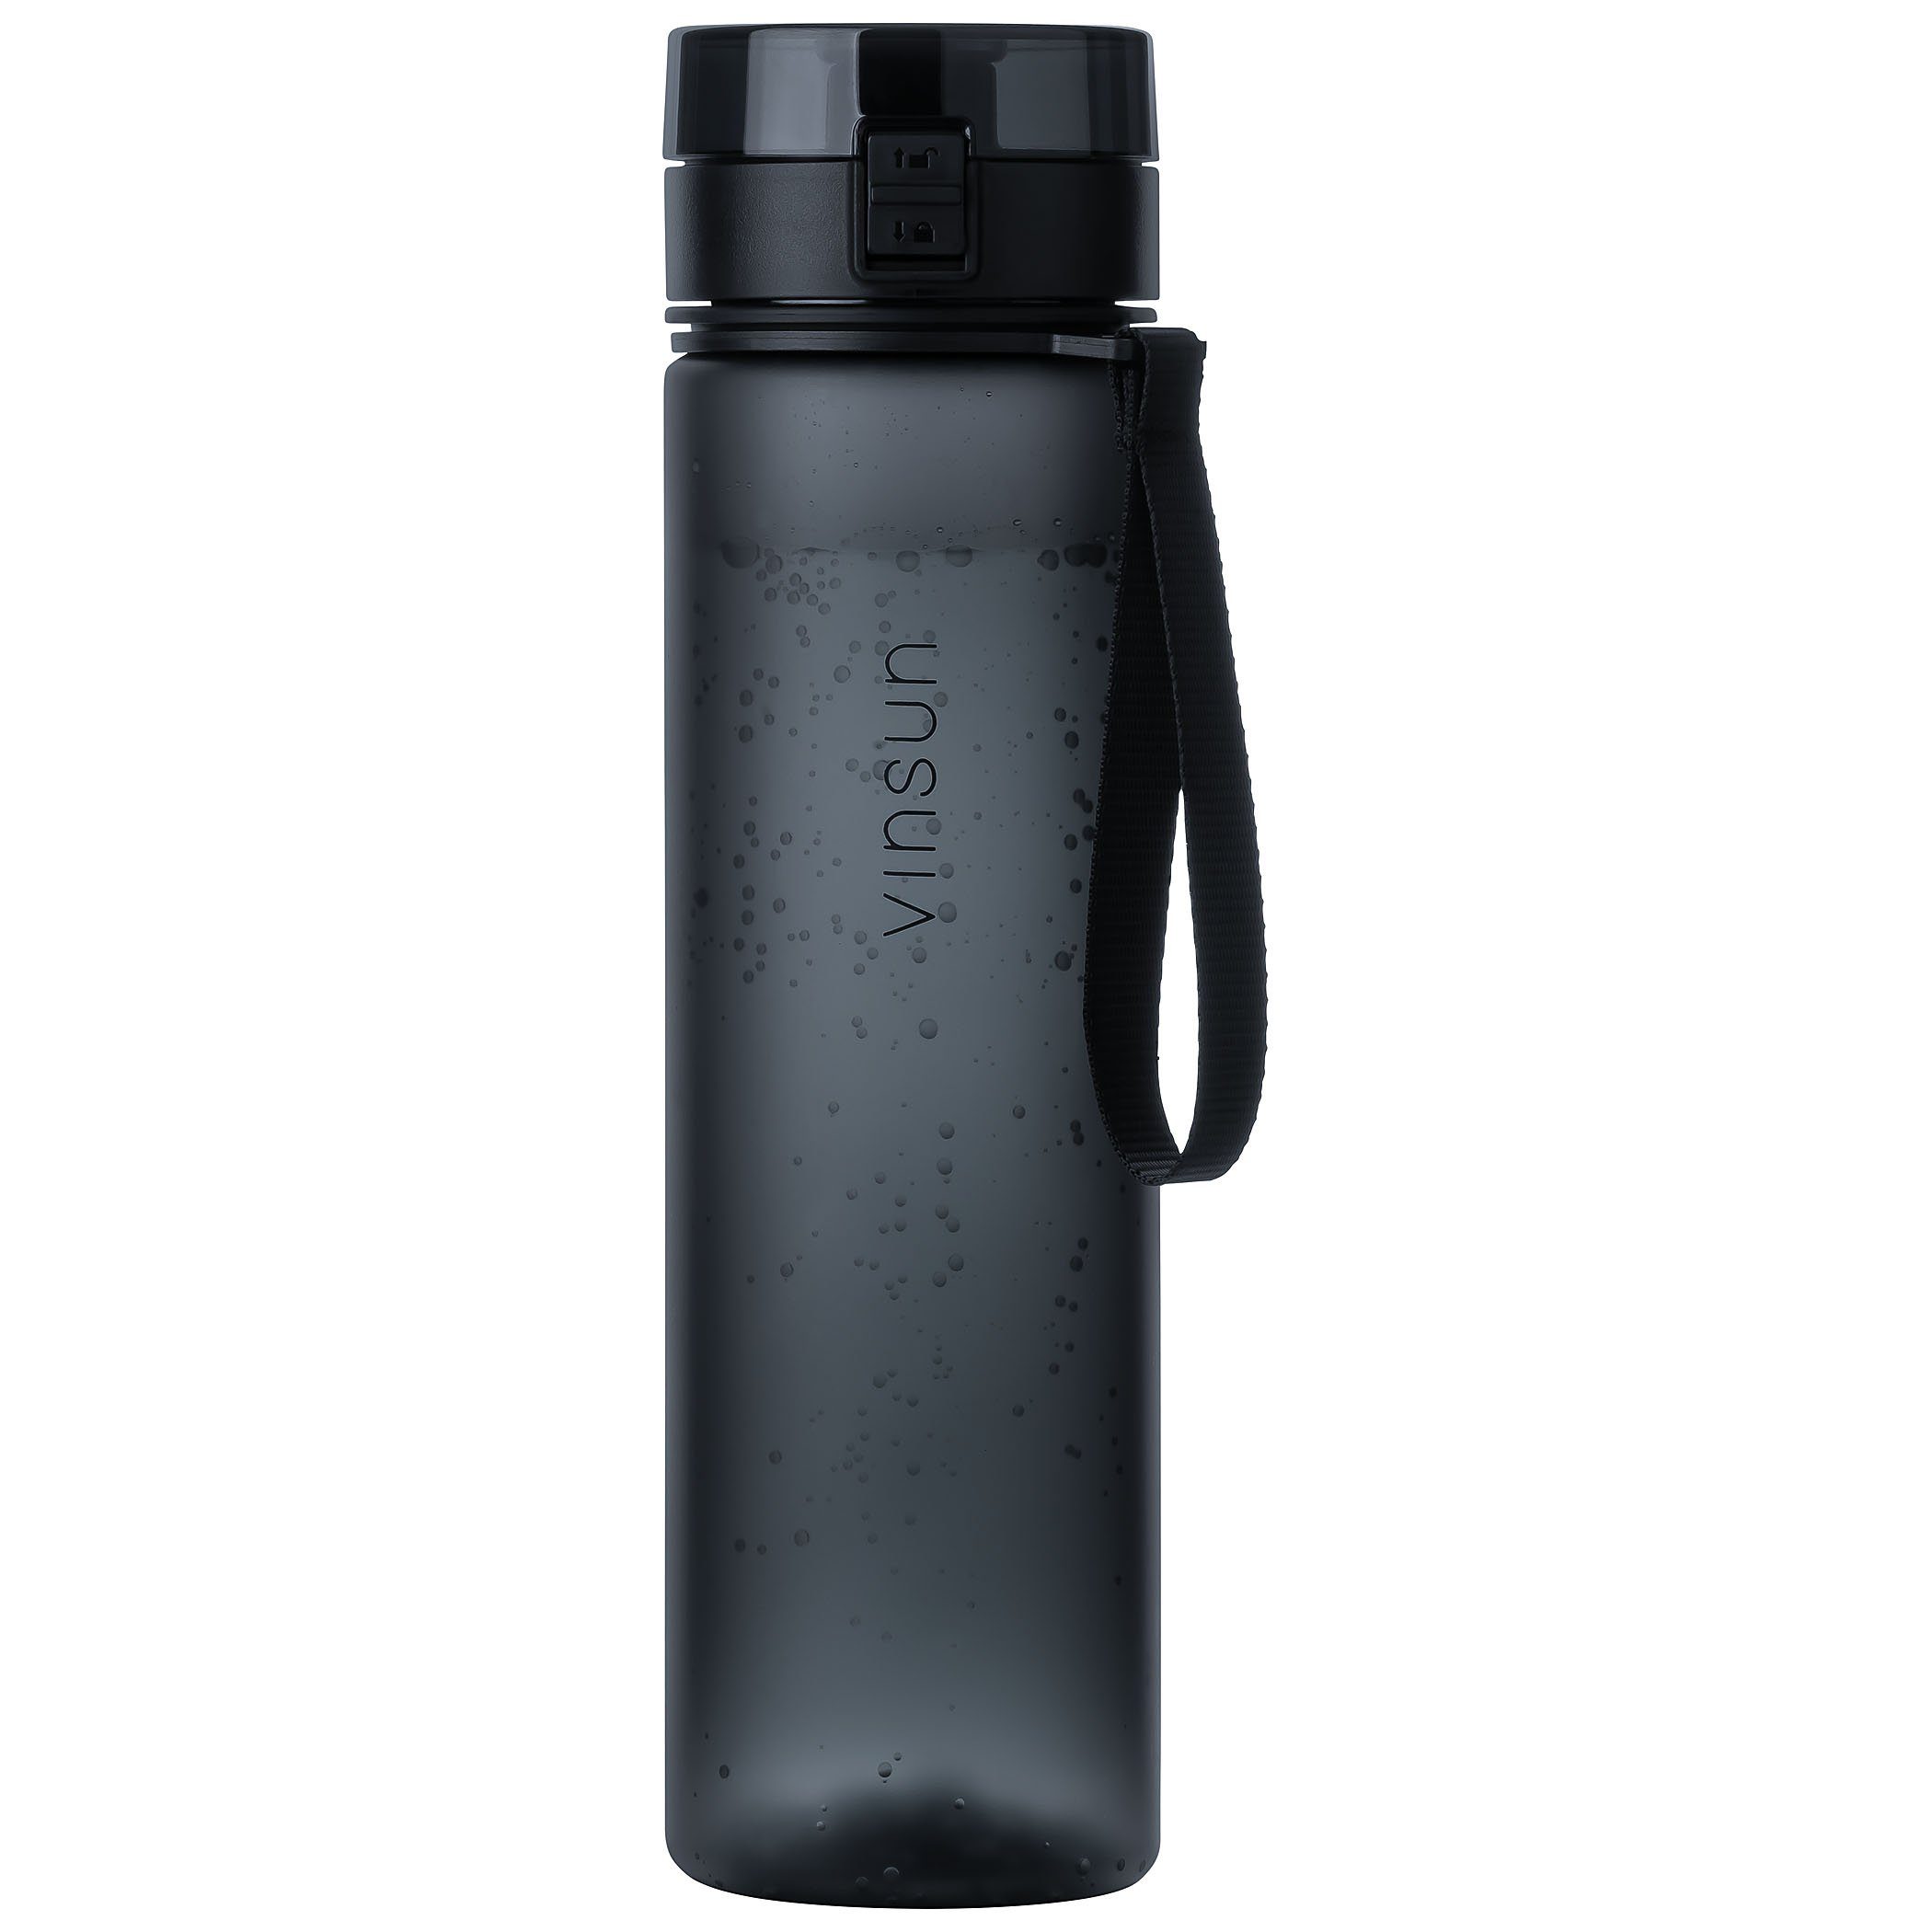 Vinsun Trinkflasche Trinkflasche 1L, Kohlensäure und Kohlensäure, Schwarz, Geruchs- auslaufsicher frei, auslaufsicher geeignet, BPA - Geschmacksneutral